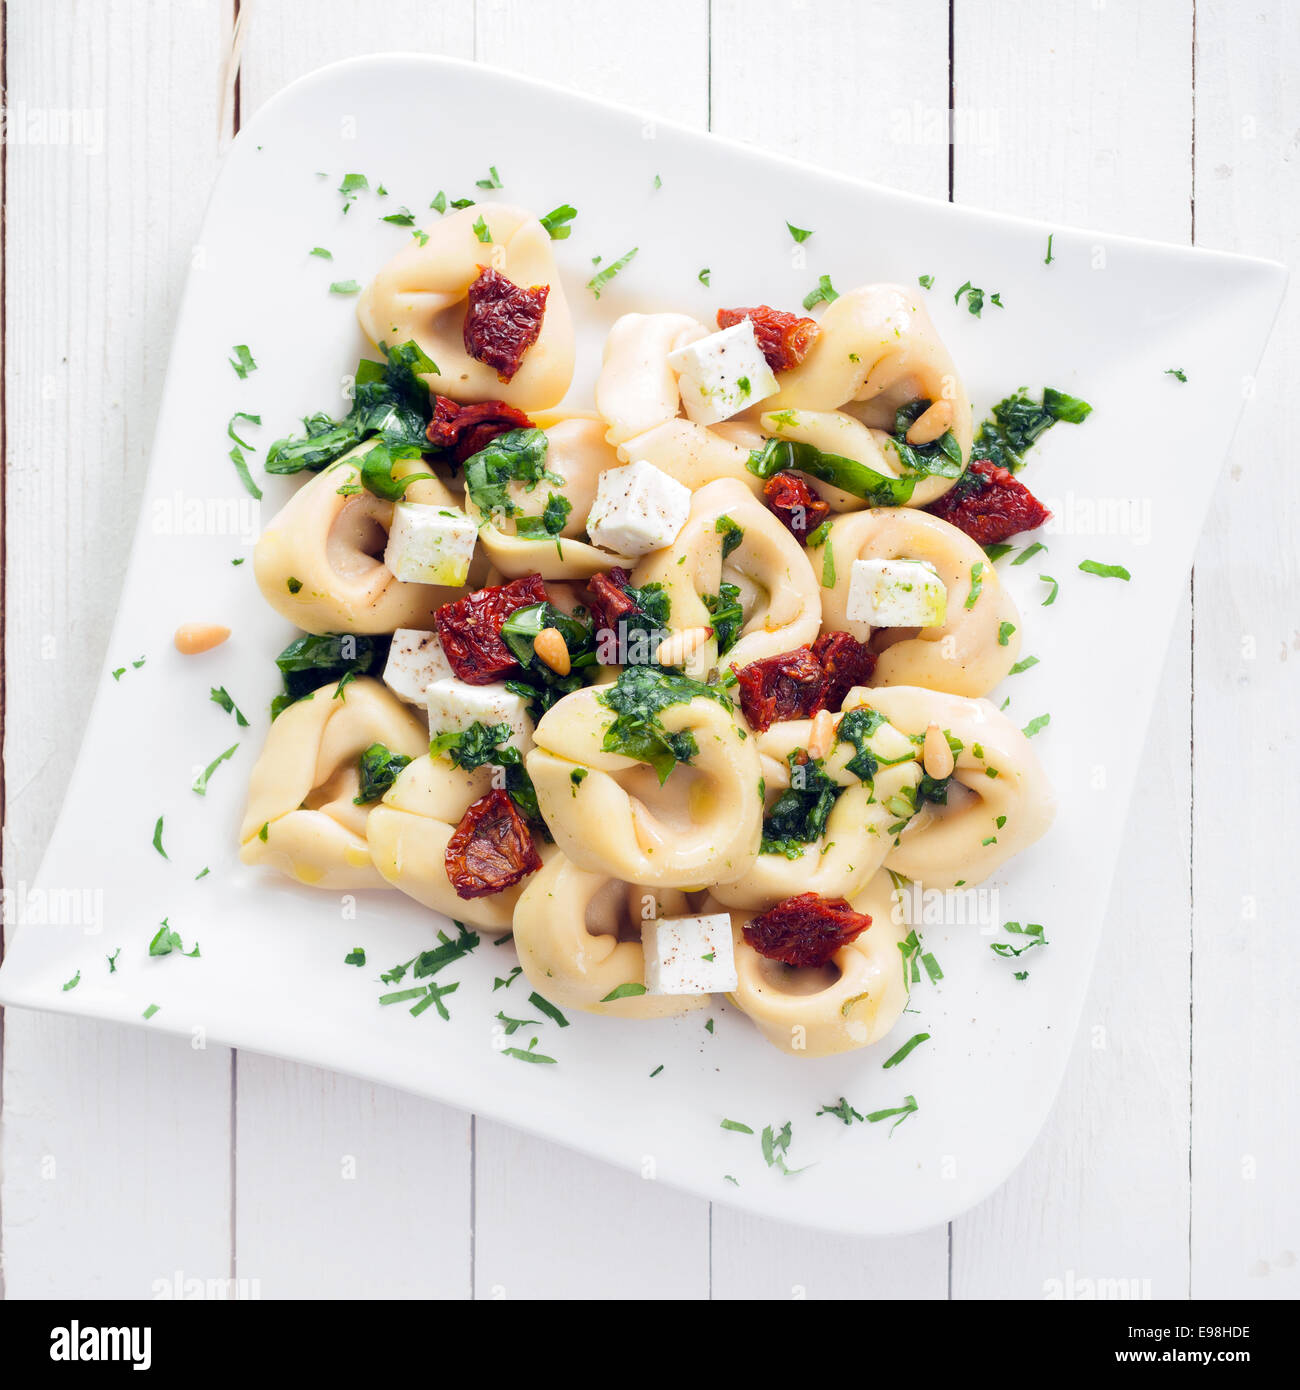 Vista aérea de un plato de pasta tortellini italianos rellenos con queso feta y pesto espolvoreado con hierbas frescas y piñones Foto de stock